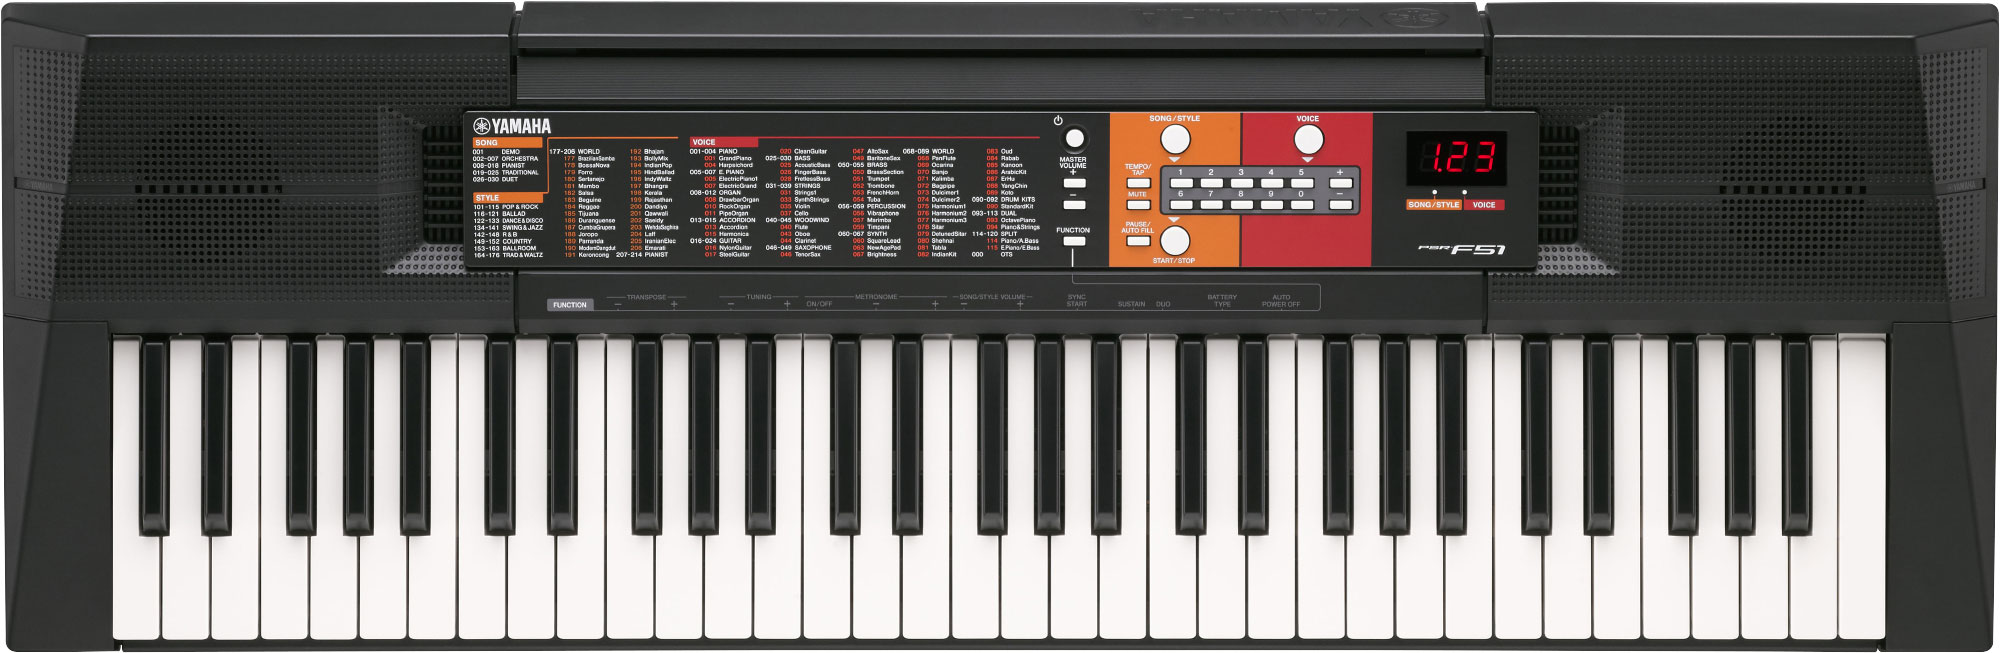 Organ Yamaha Psr F51